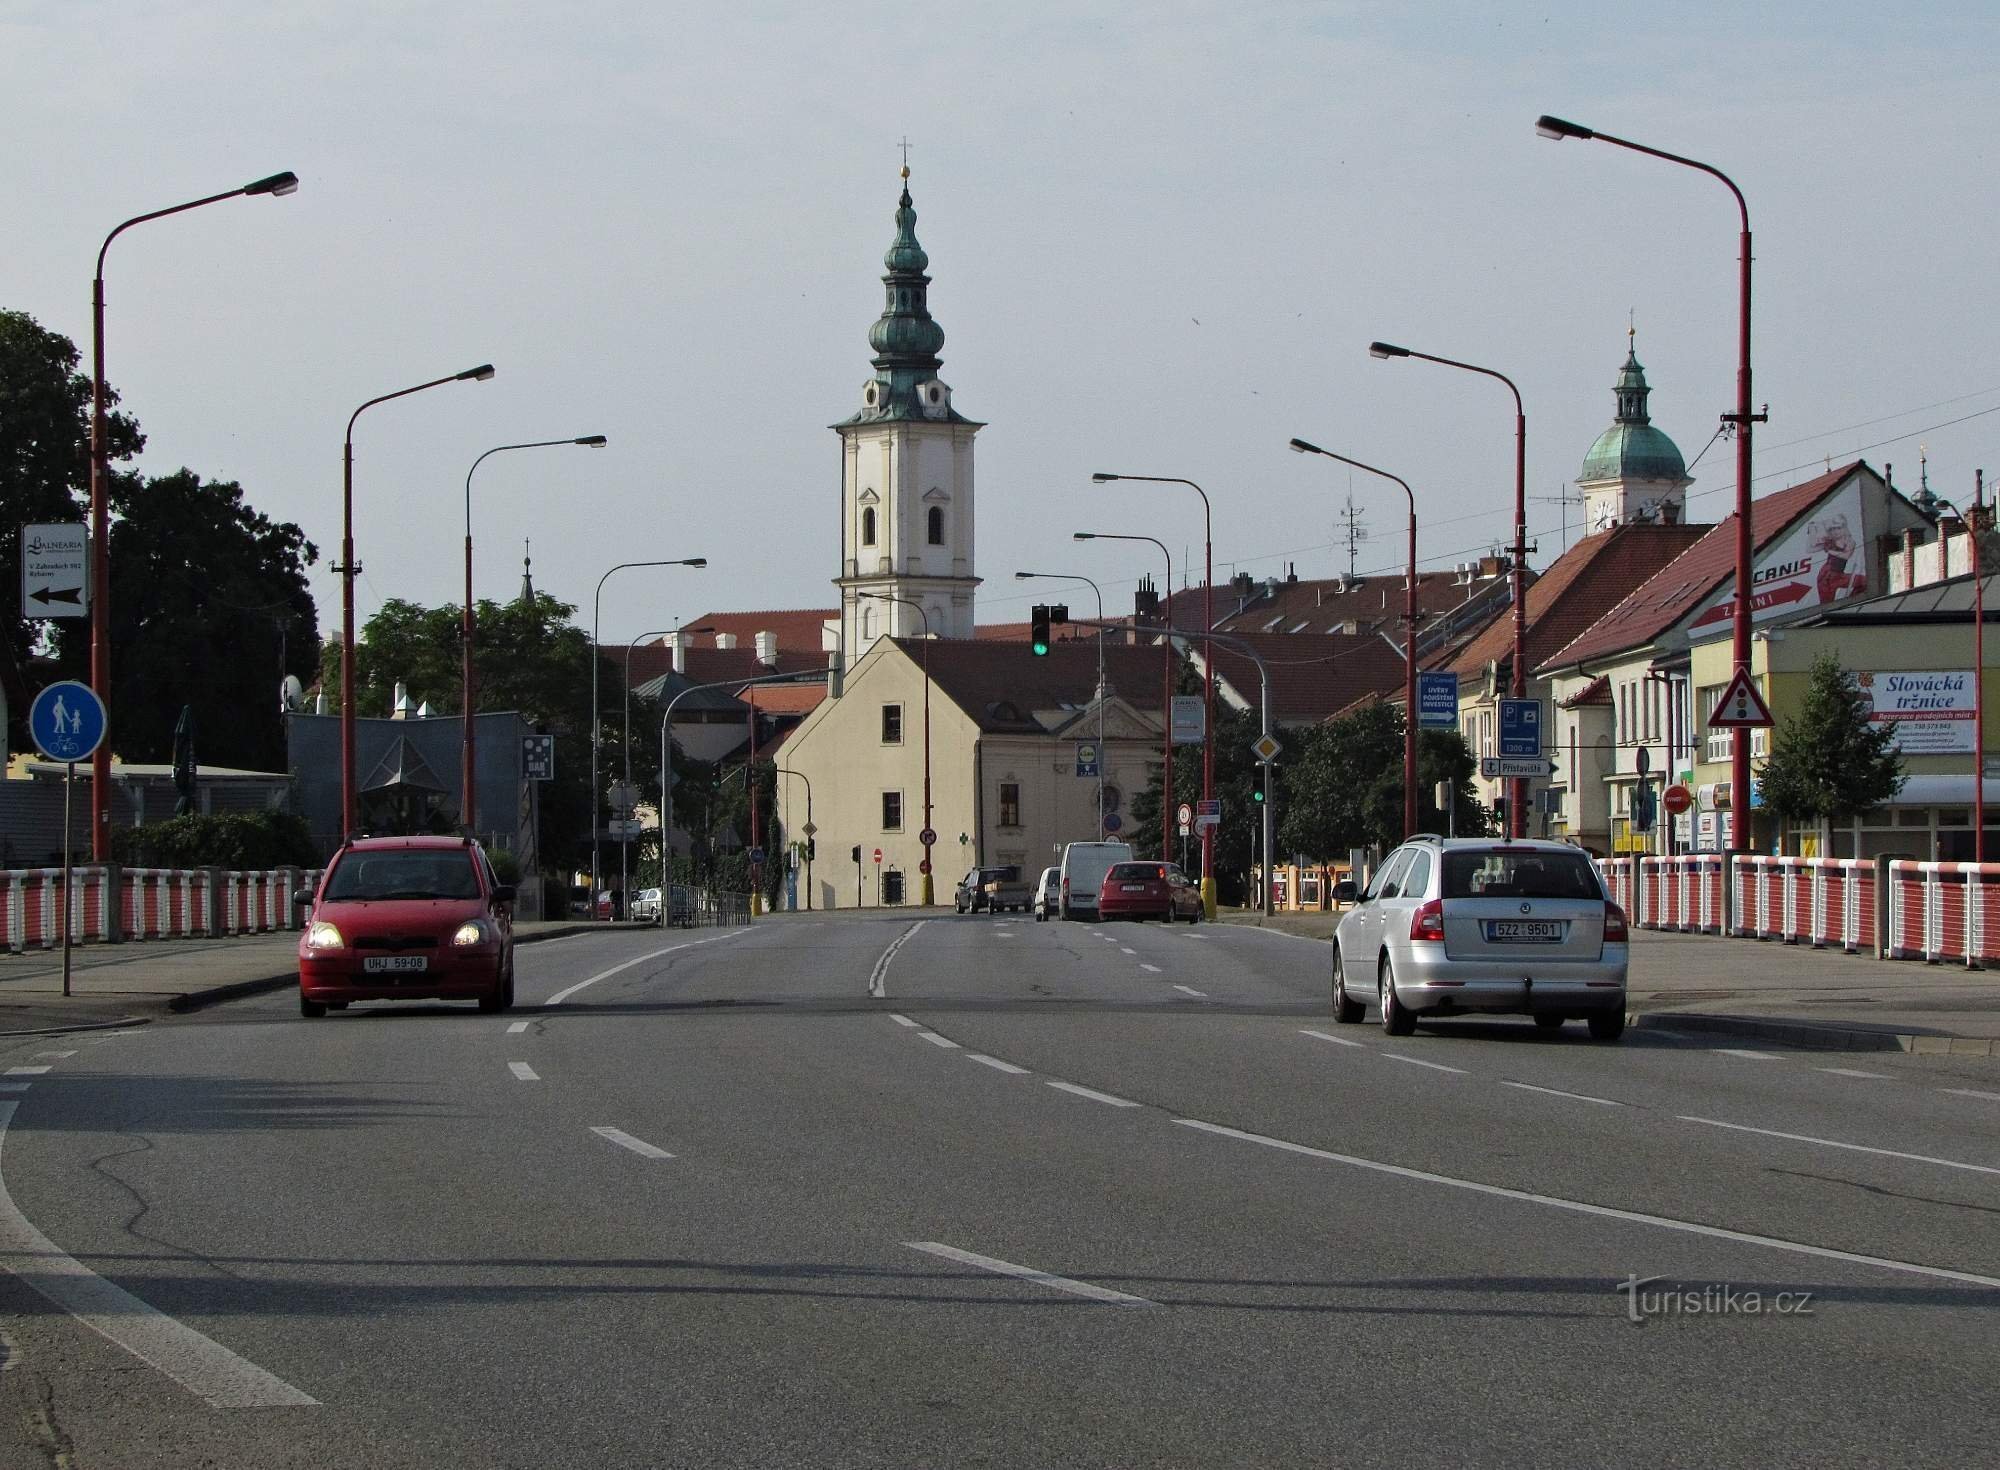 Uherské Hradiště - територія францисканського монастиря та церкви